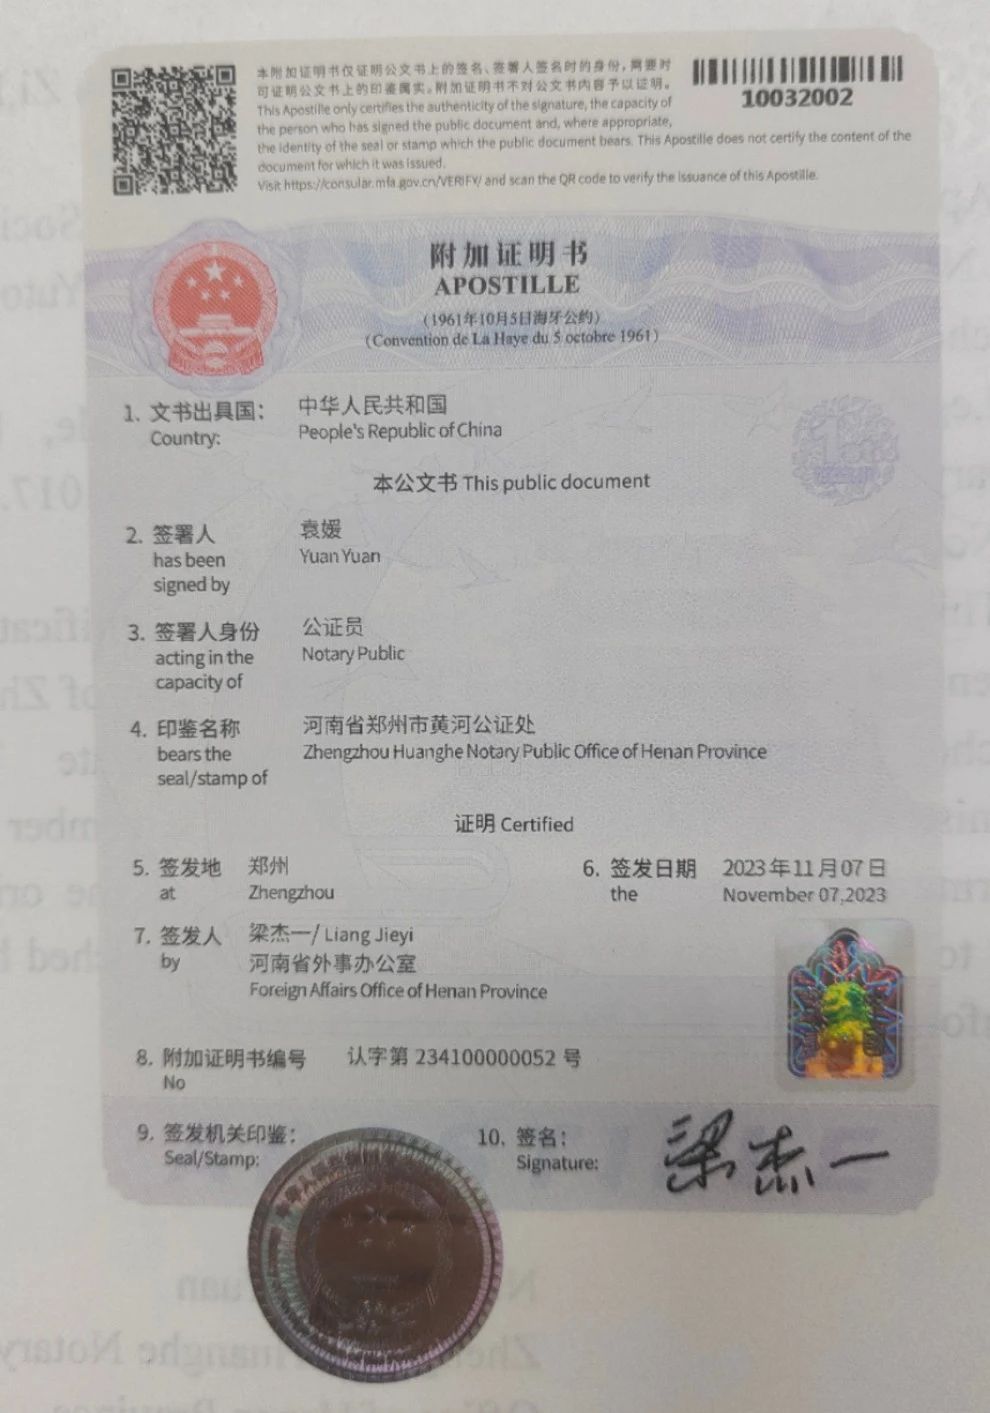 黄河公证处出具的涉外公证书成为河南省首份通过附加证明书认证的公证书